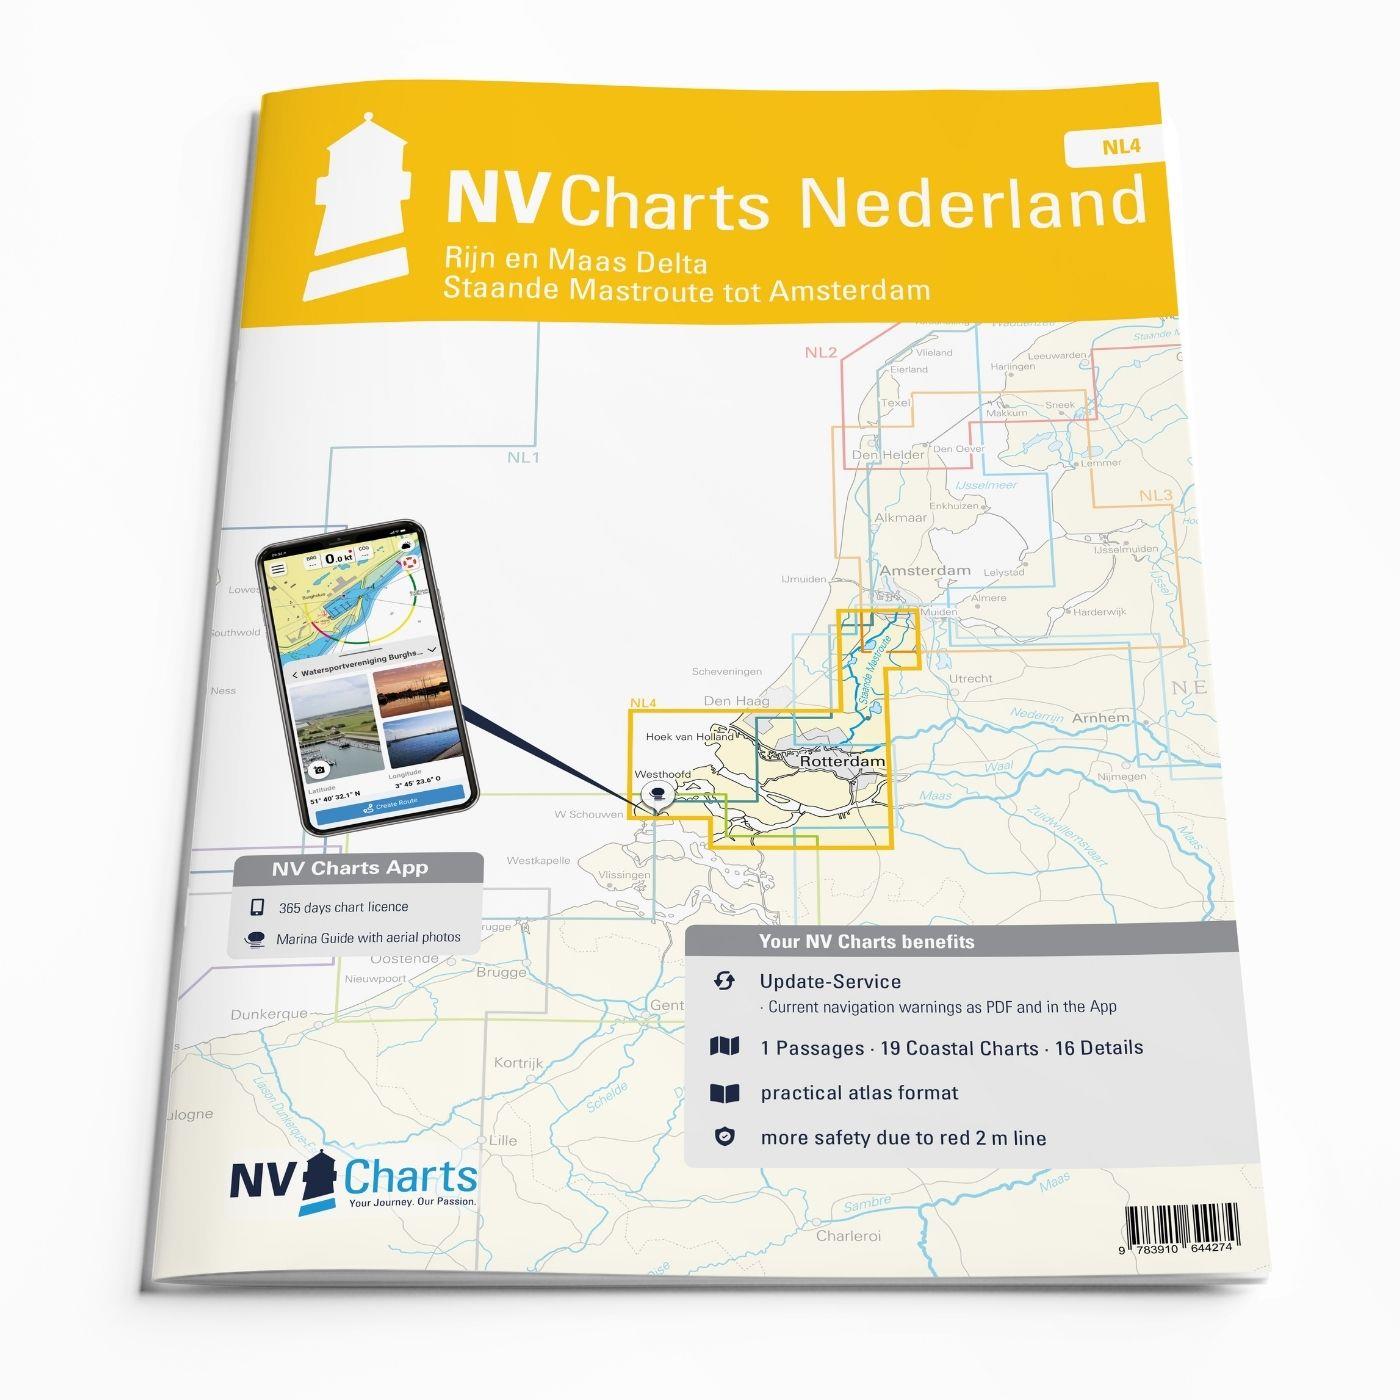 NV Charts Nederland NL4 - Rijn & Maas Delta